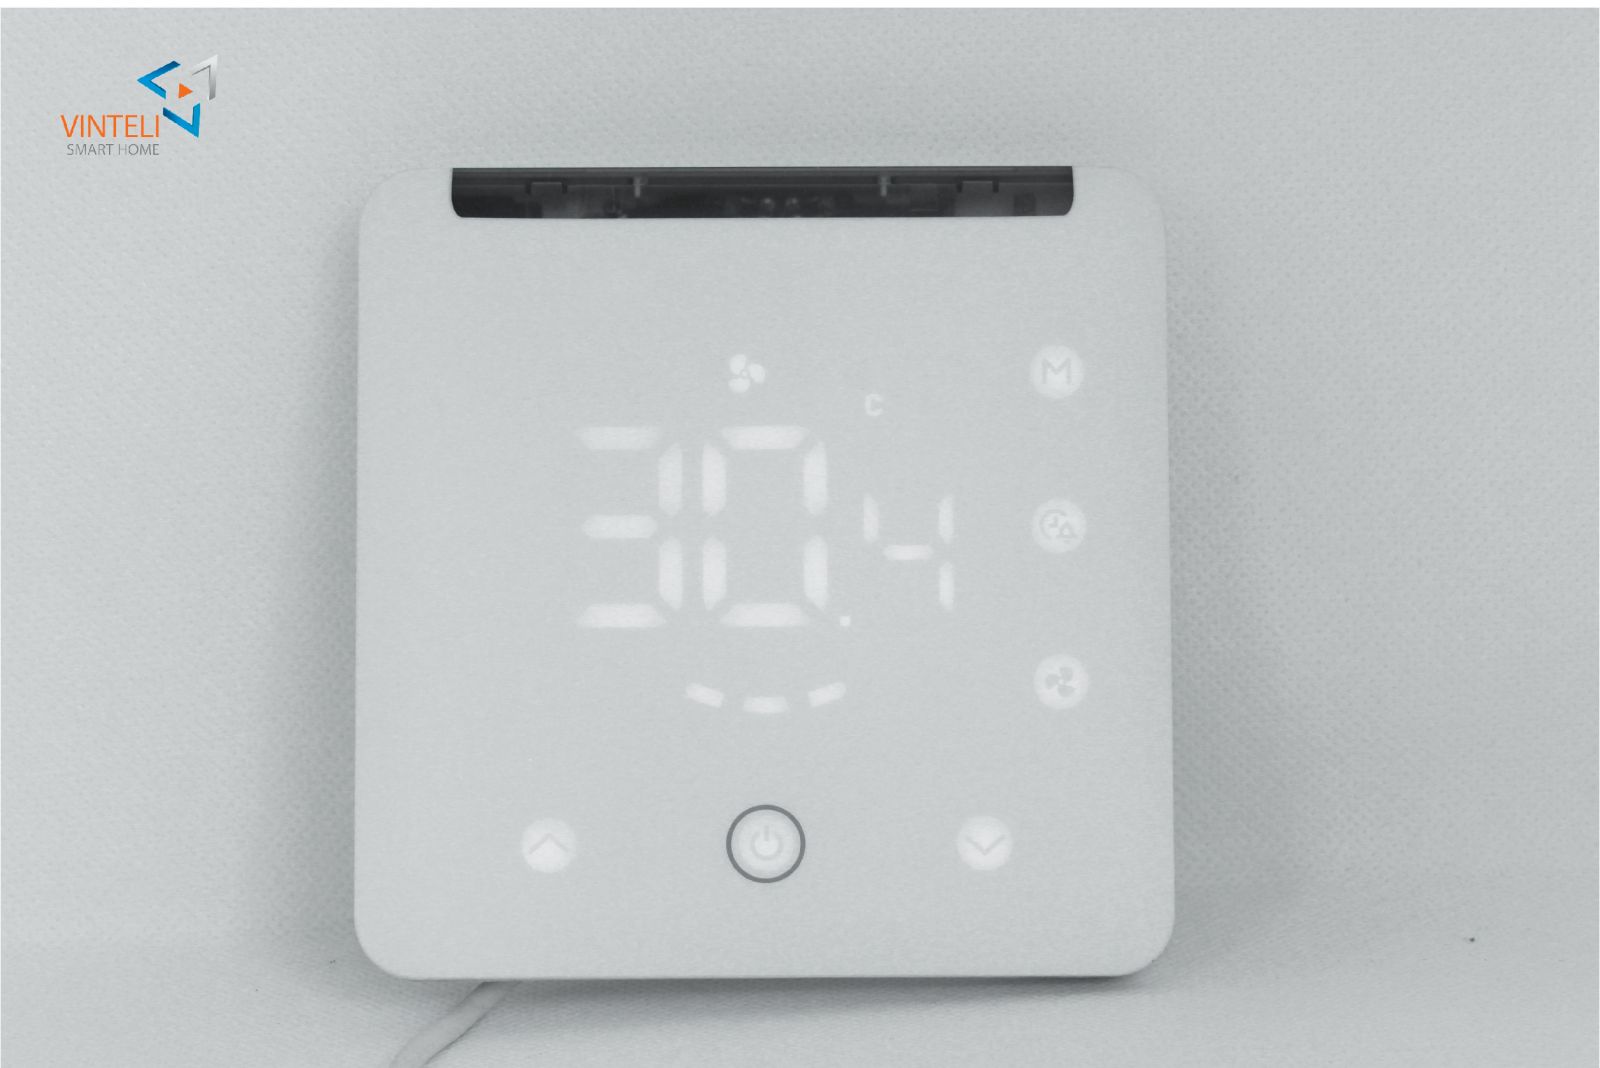 Thermostat điều khiển nhiệt độ